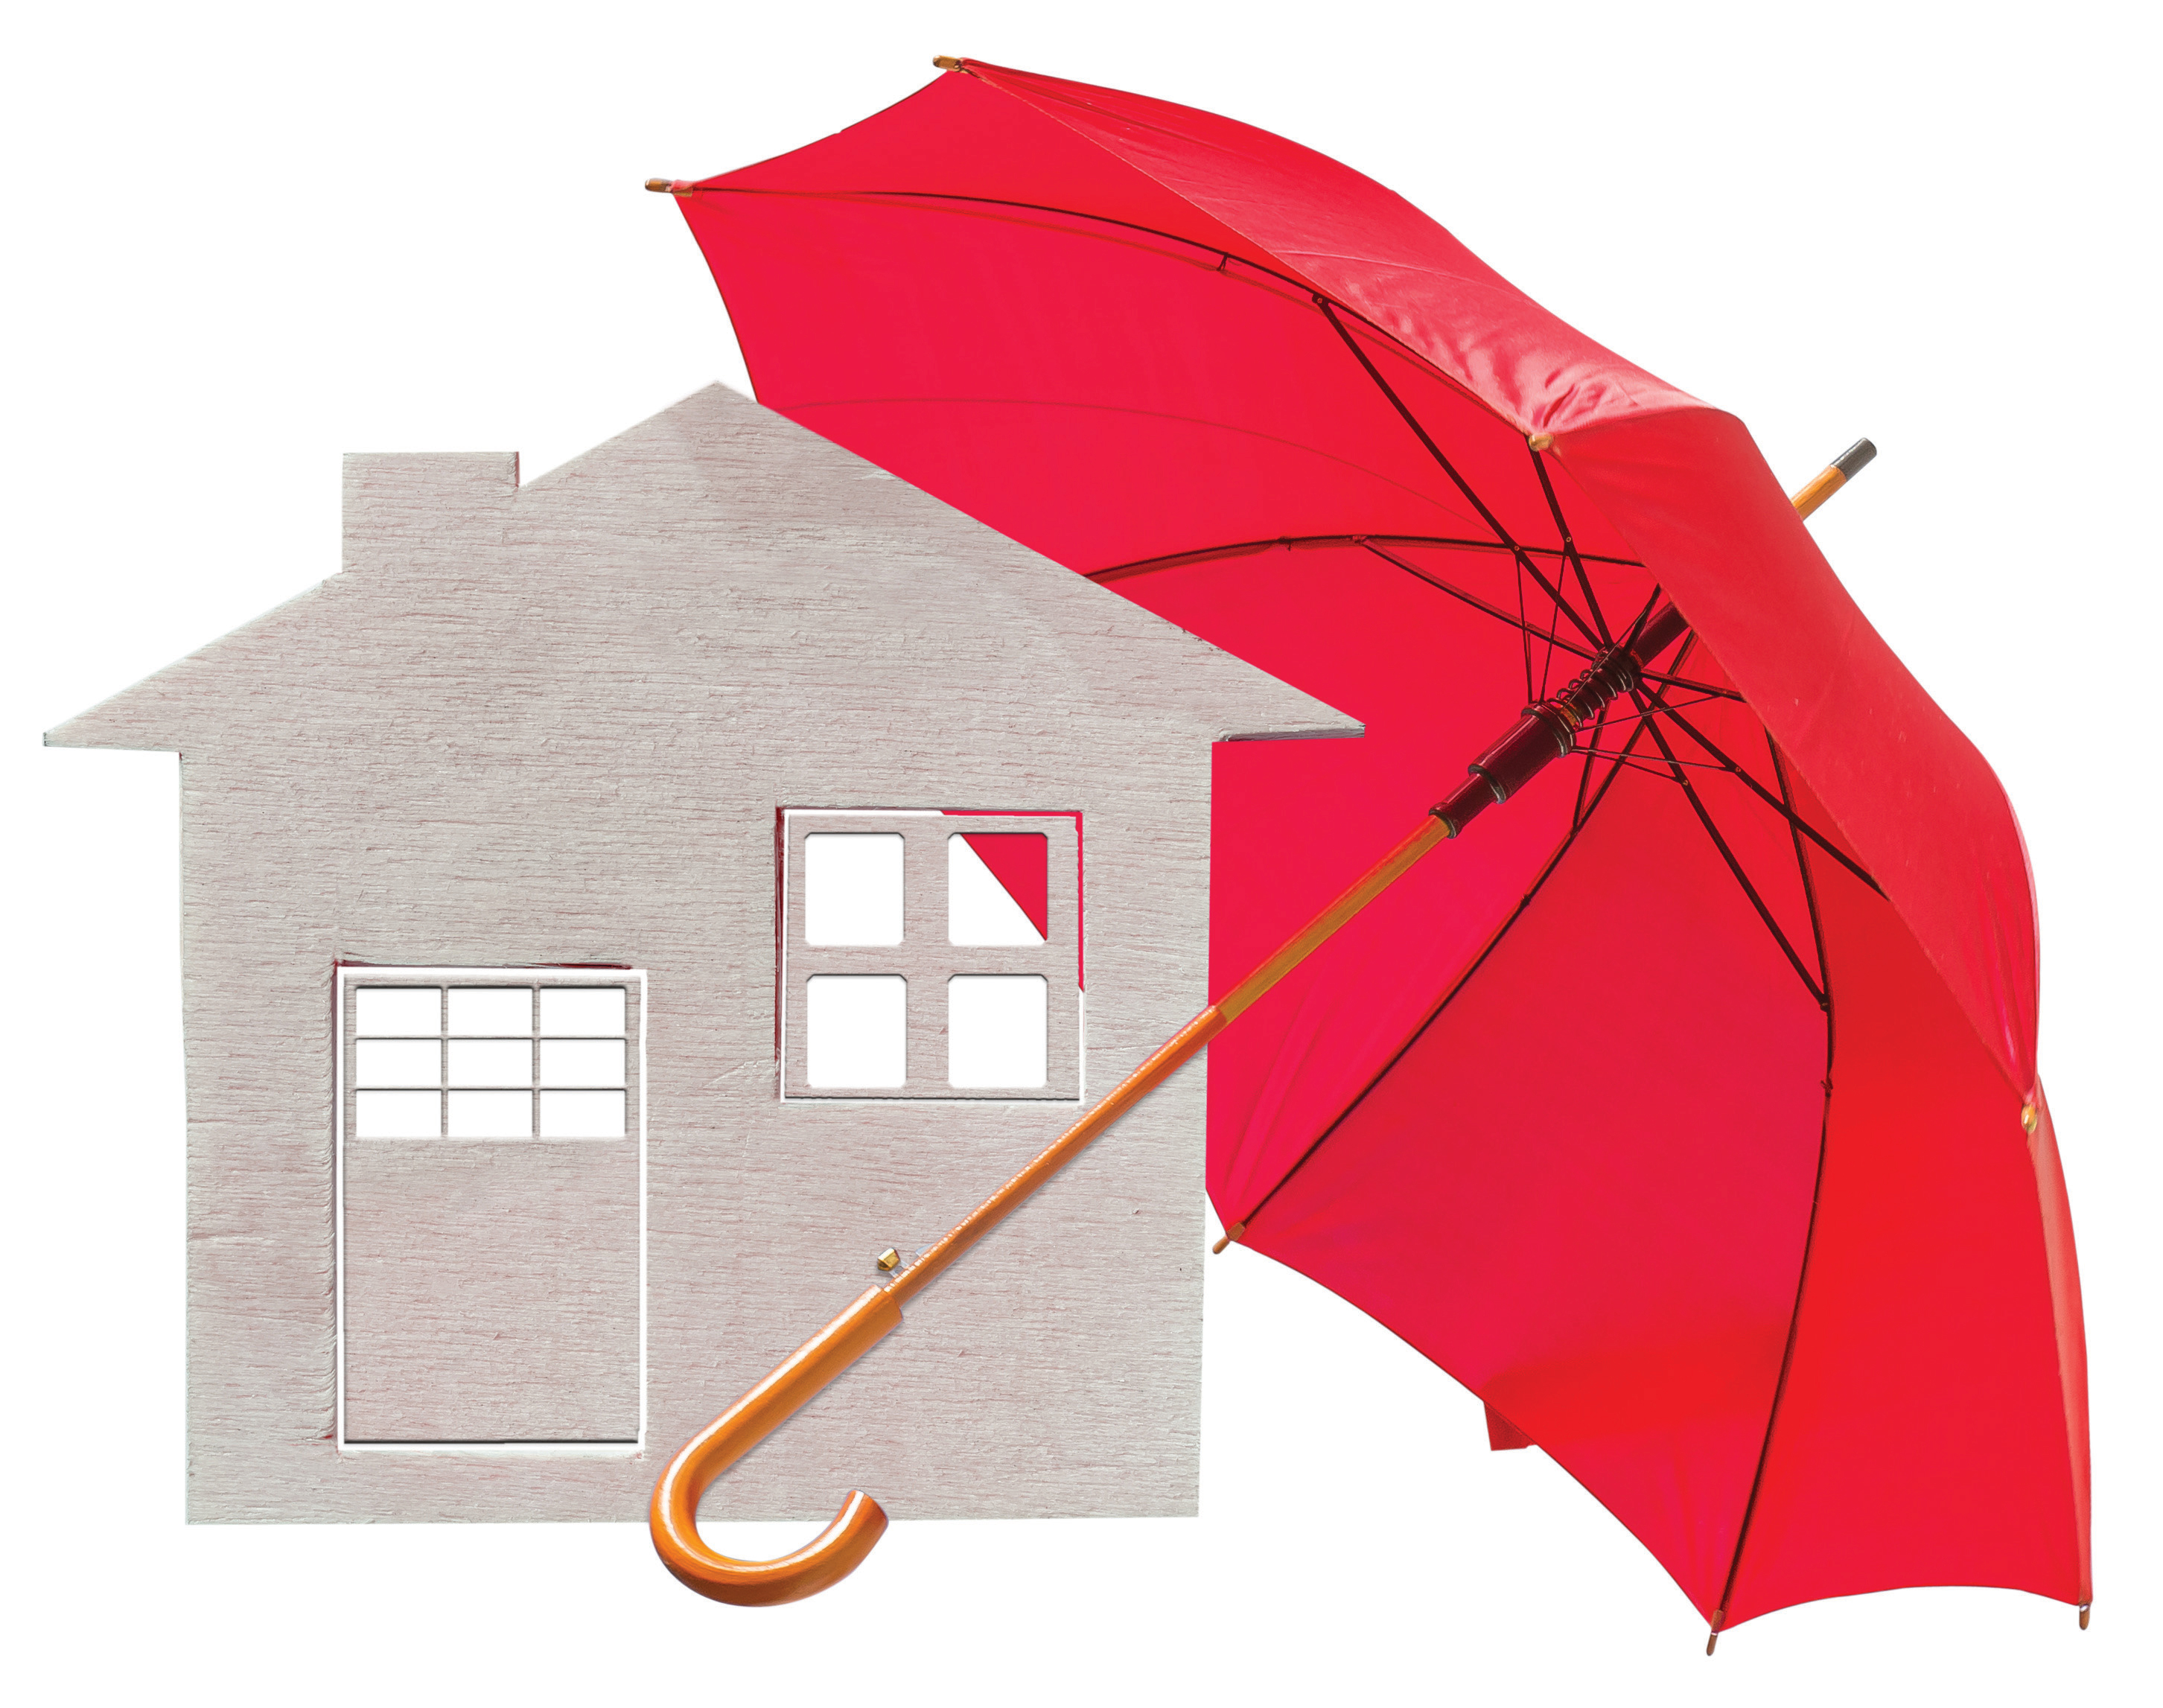 Protecting Tenants at Foreclosure Act